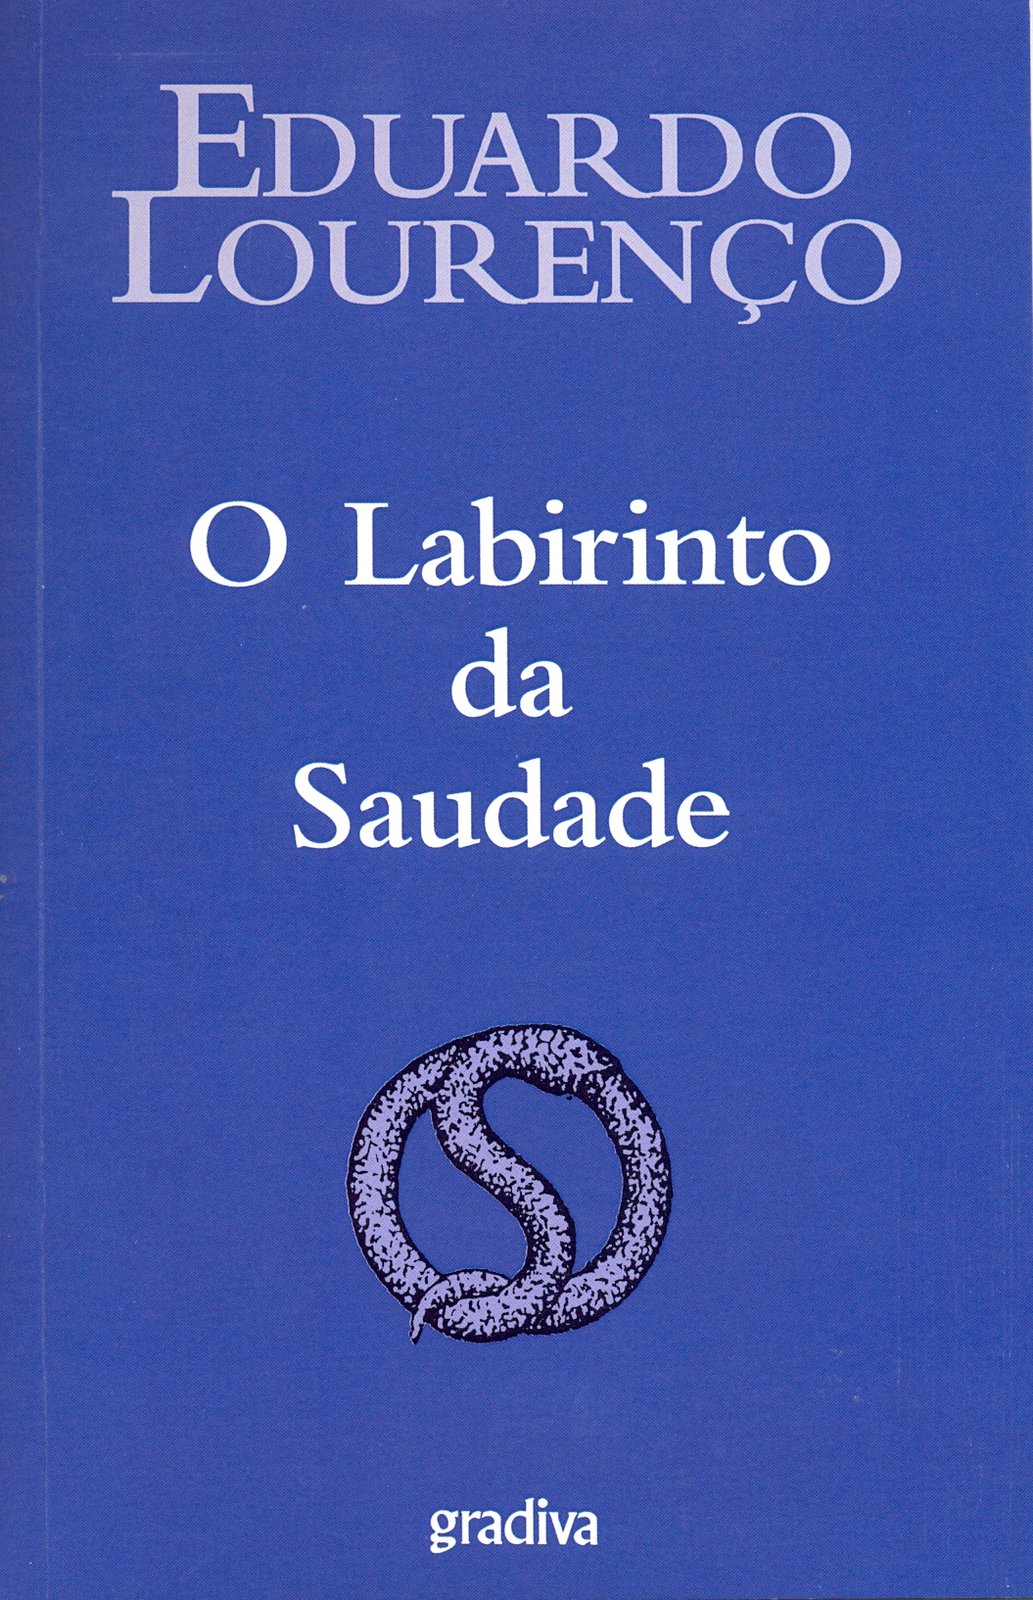 Eduardo Lourenço - O labirinto da saudade